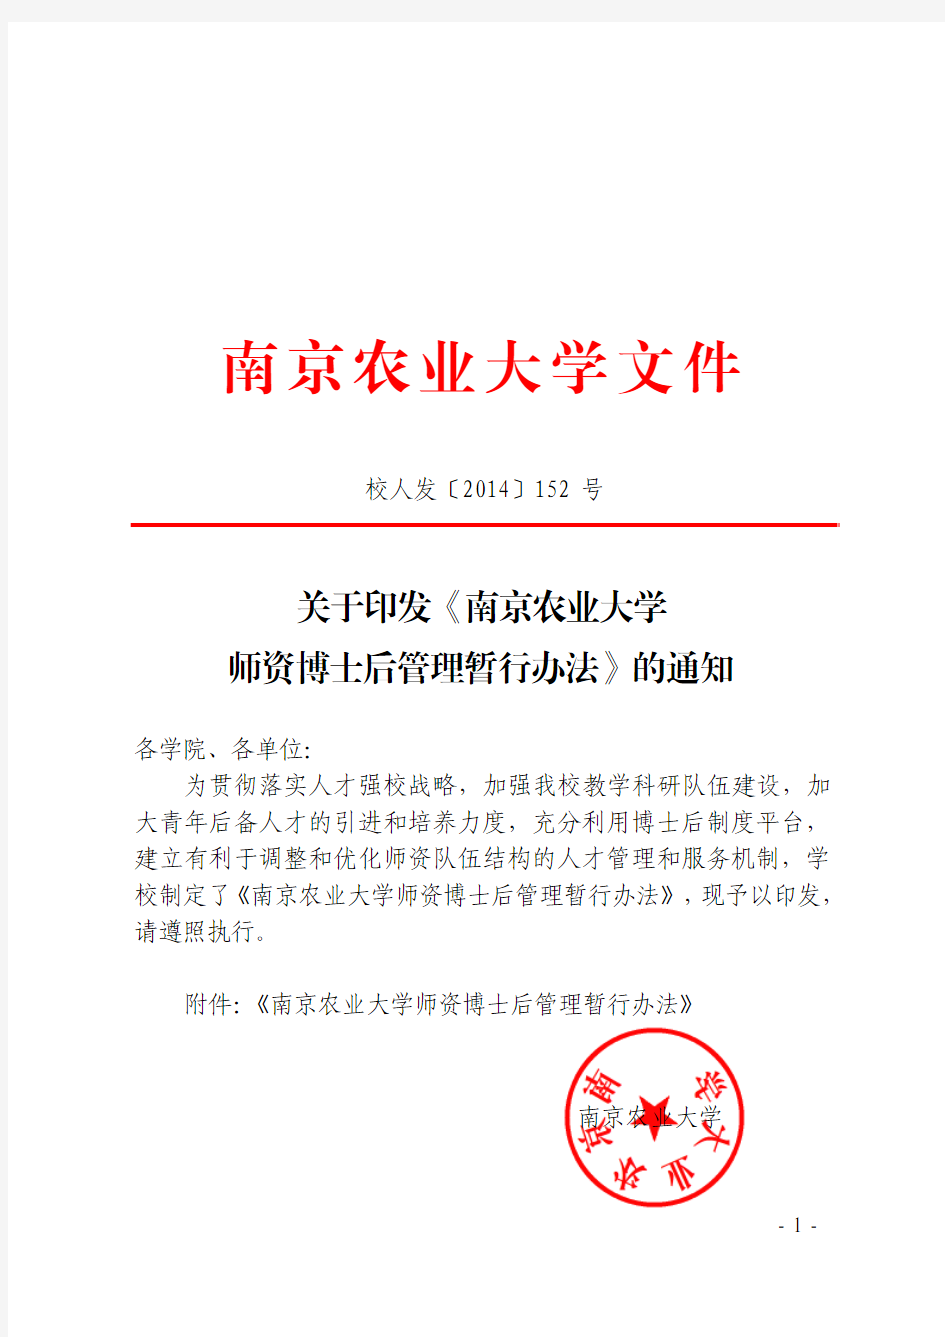 关于印发《南京农业大学师资博士后管理暂行办法》的通知